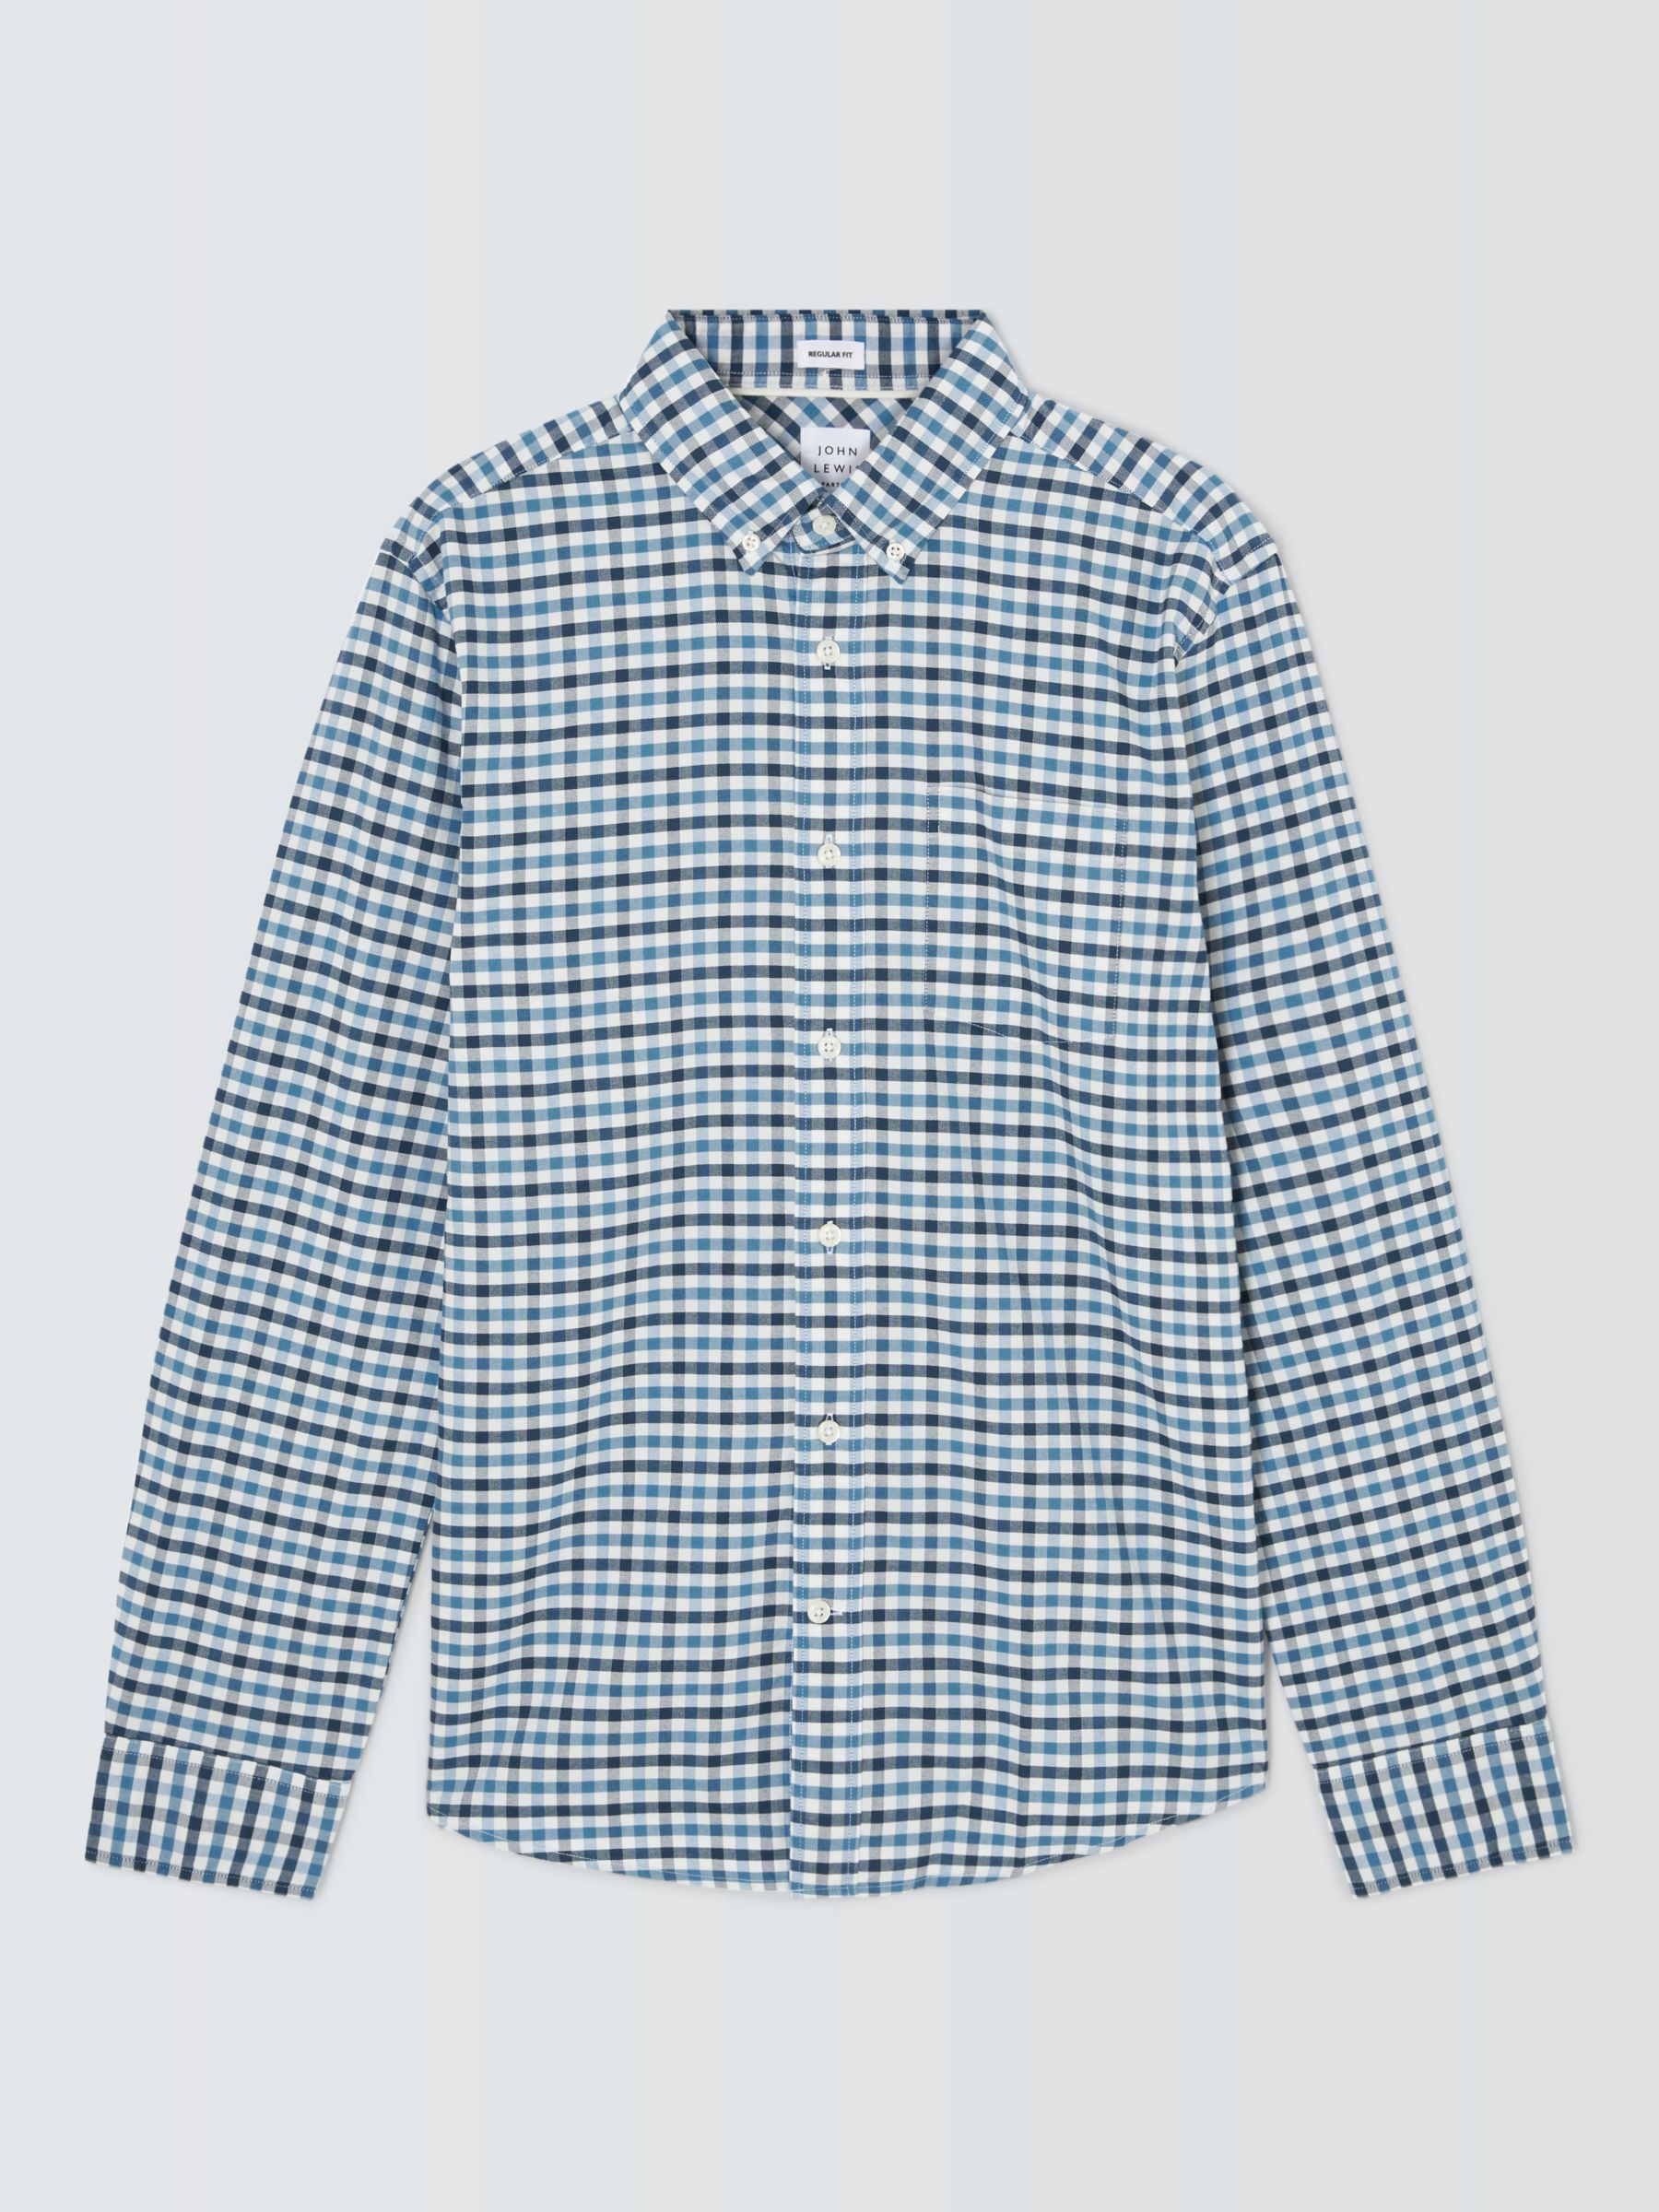 John Lewis Oxford Gingham Long Sleeve Shirt, Blue at John Lewis & Partners